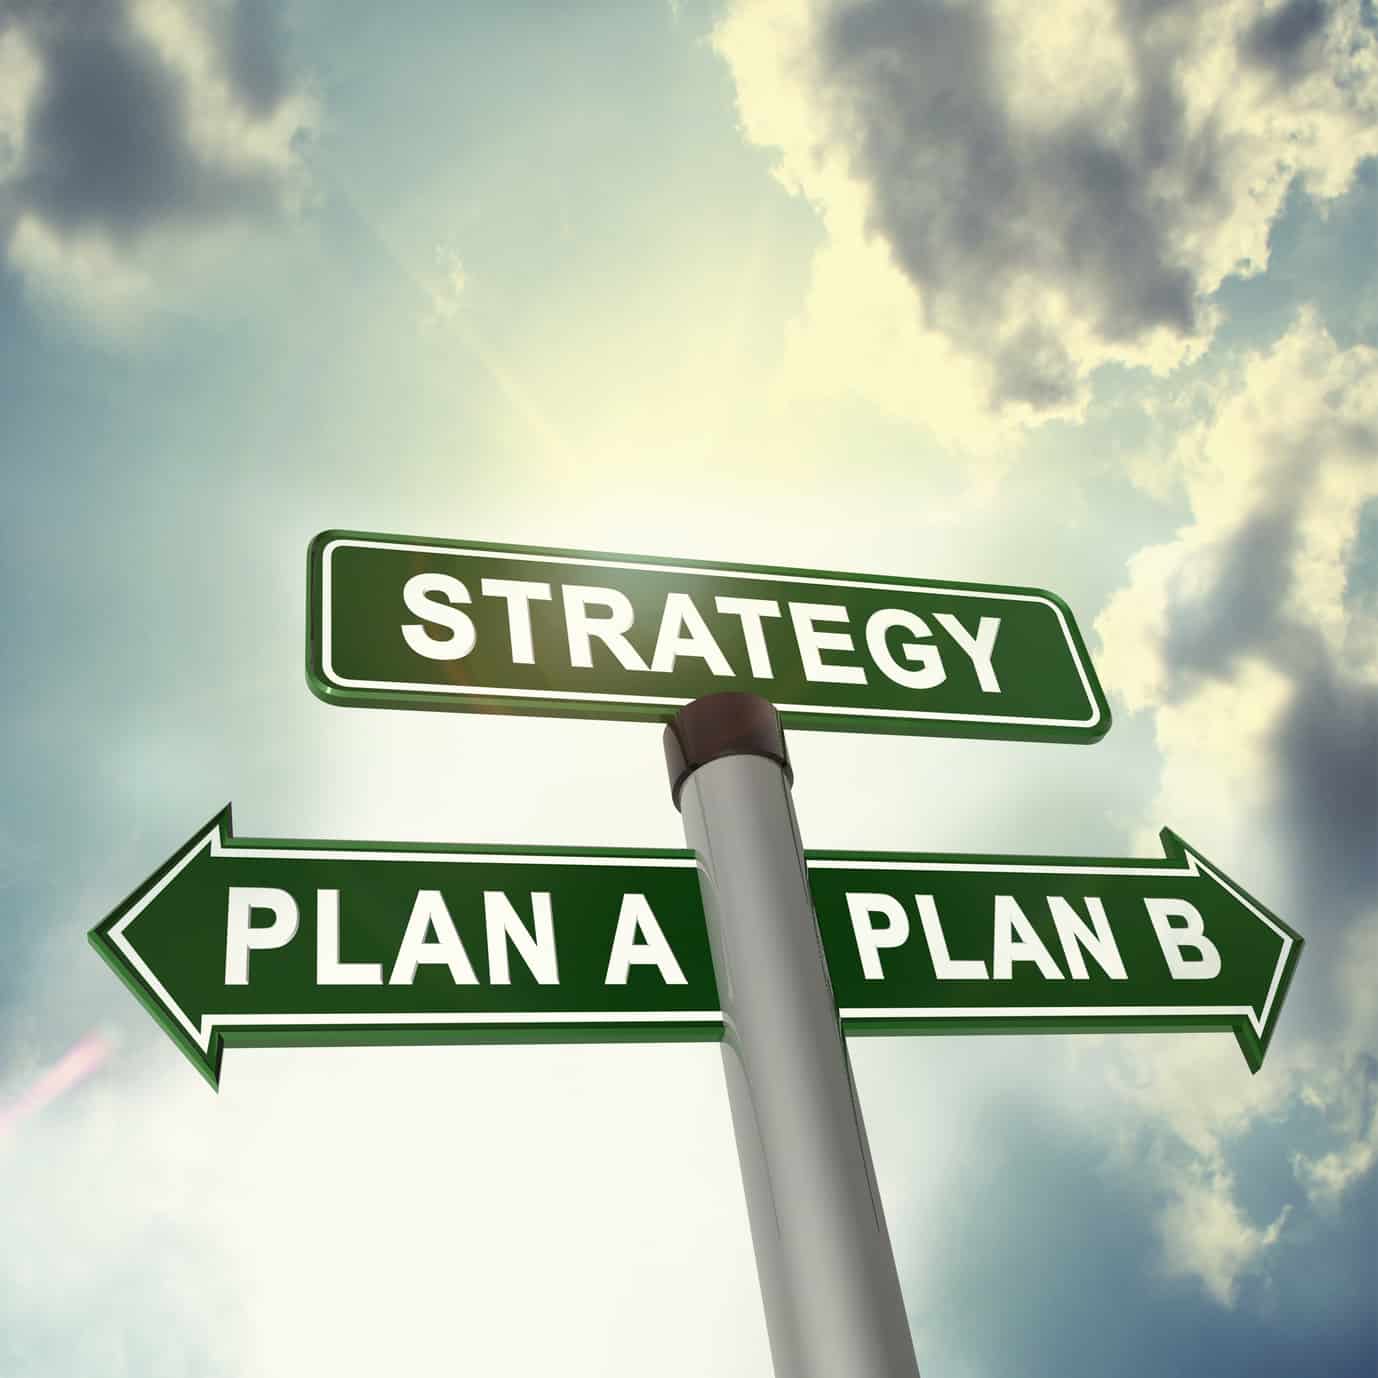 Strategy plan